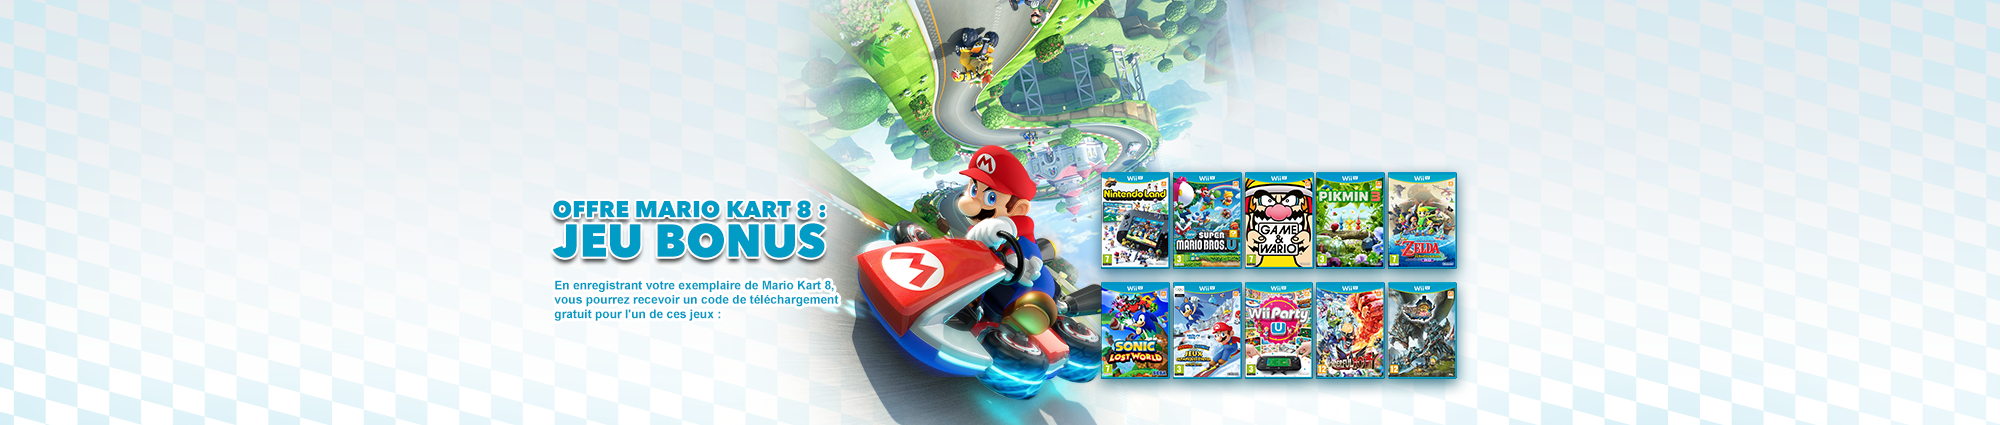 Offre Mario Kart 8 : jeux bonus